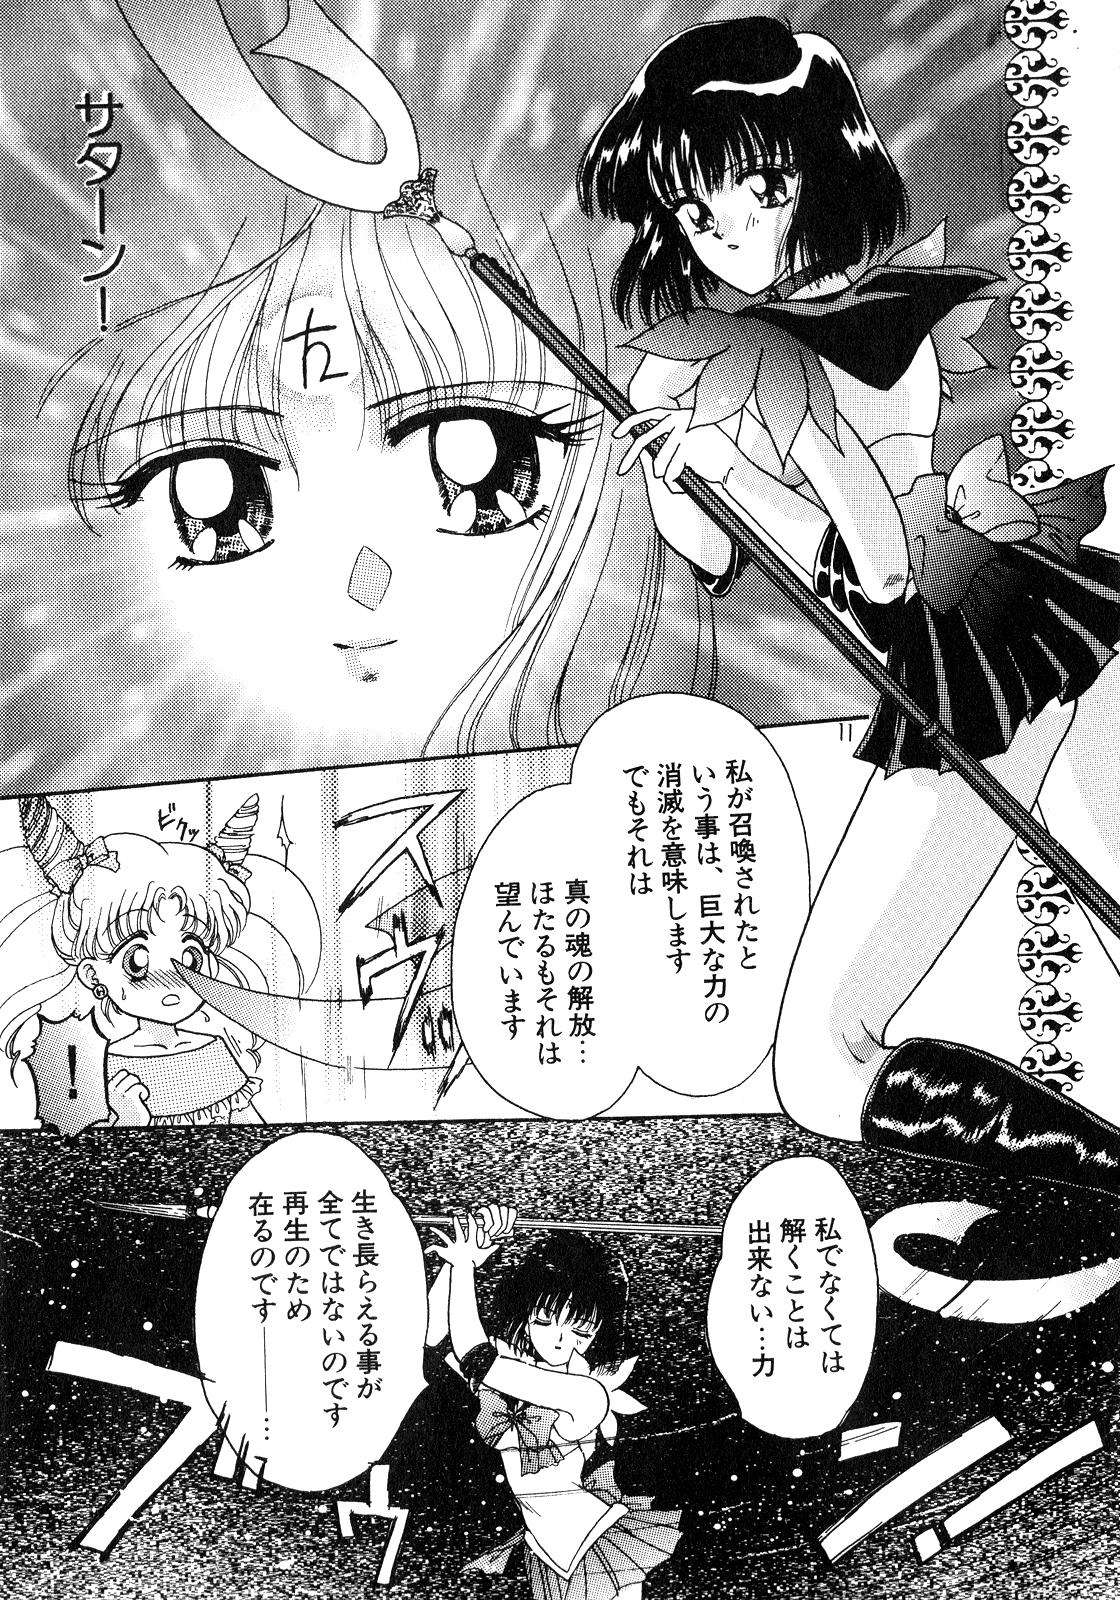 Lez Fuck Lunatic Party 8 - Sailor moon Hardcore Rough Sex - Page 10